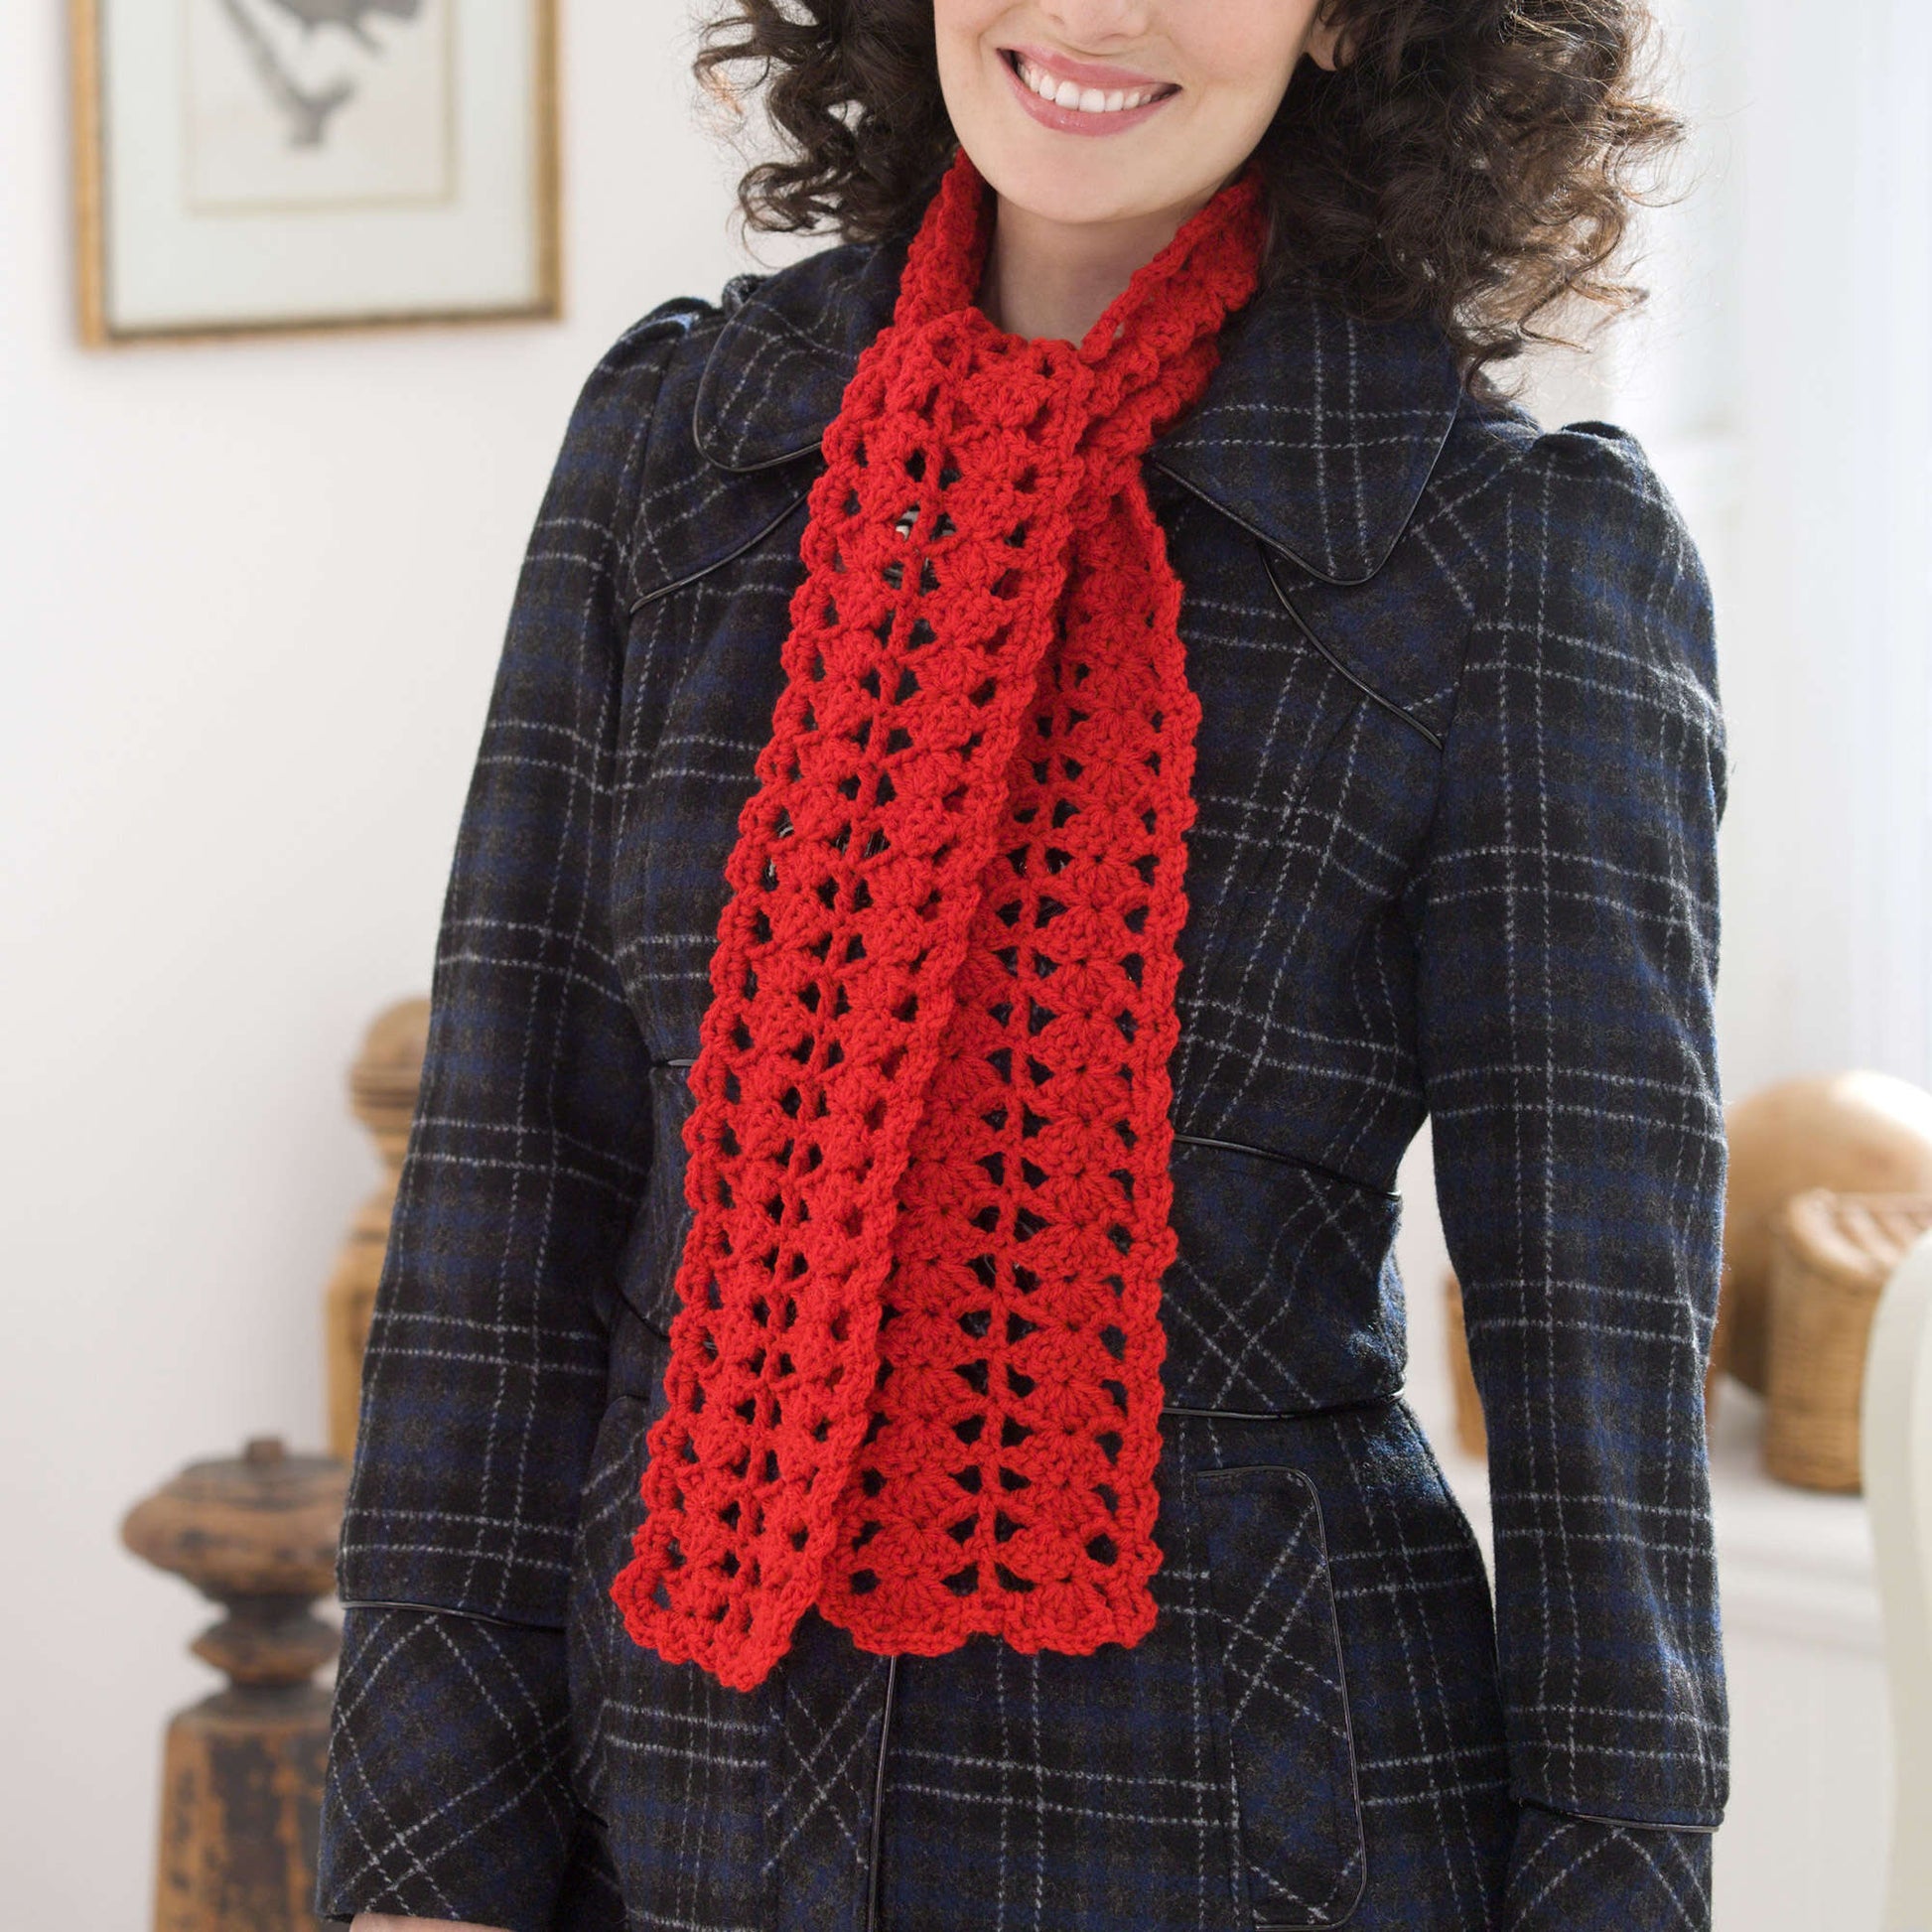 Free Red Heart Heartwarming Crochet Scarf Pattern